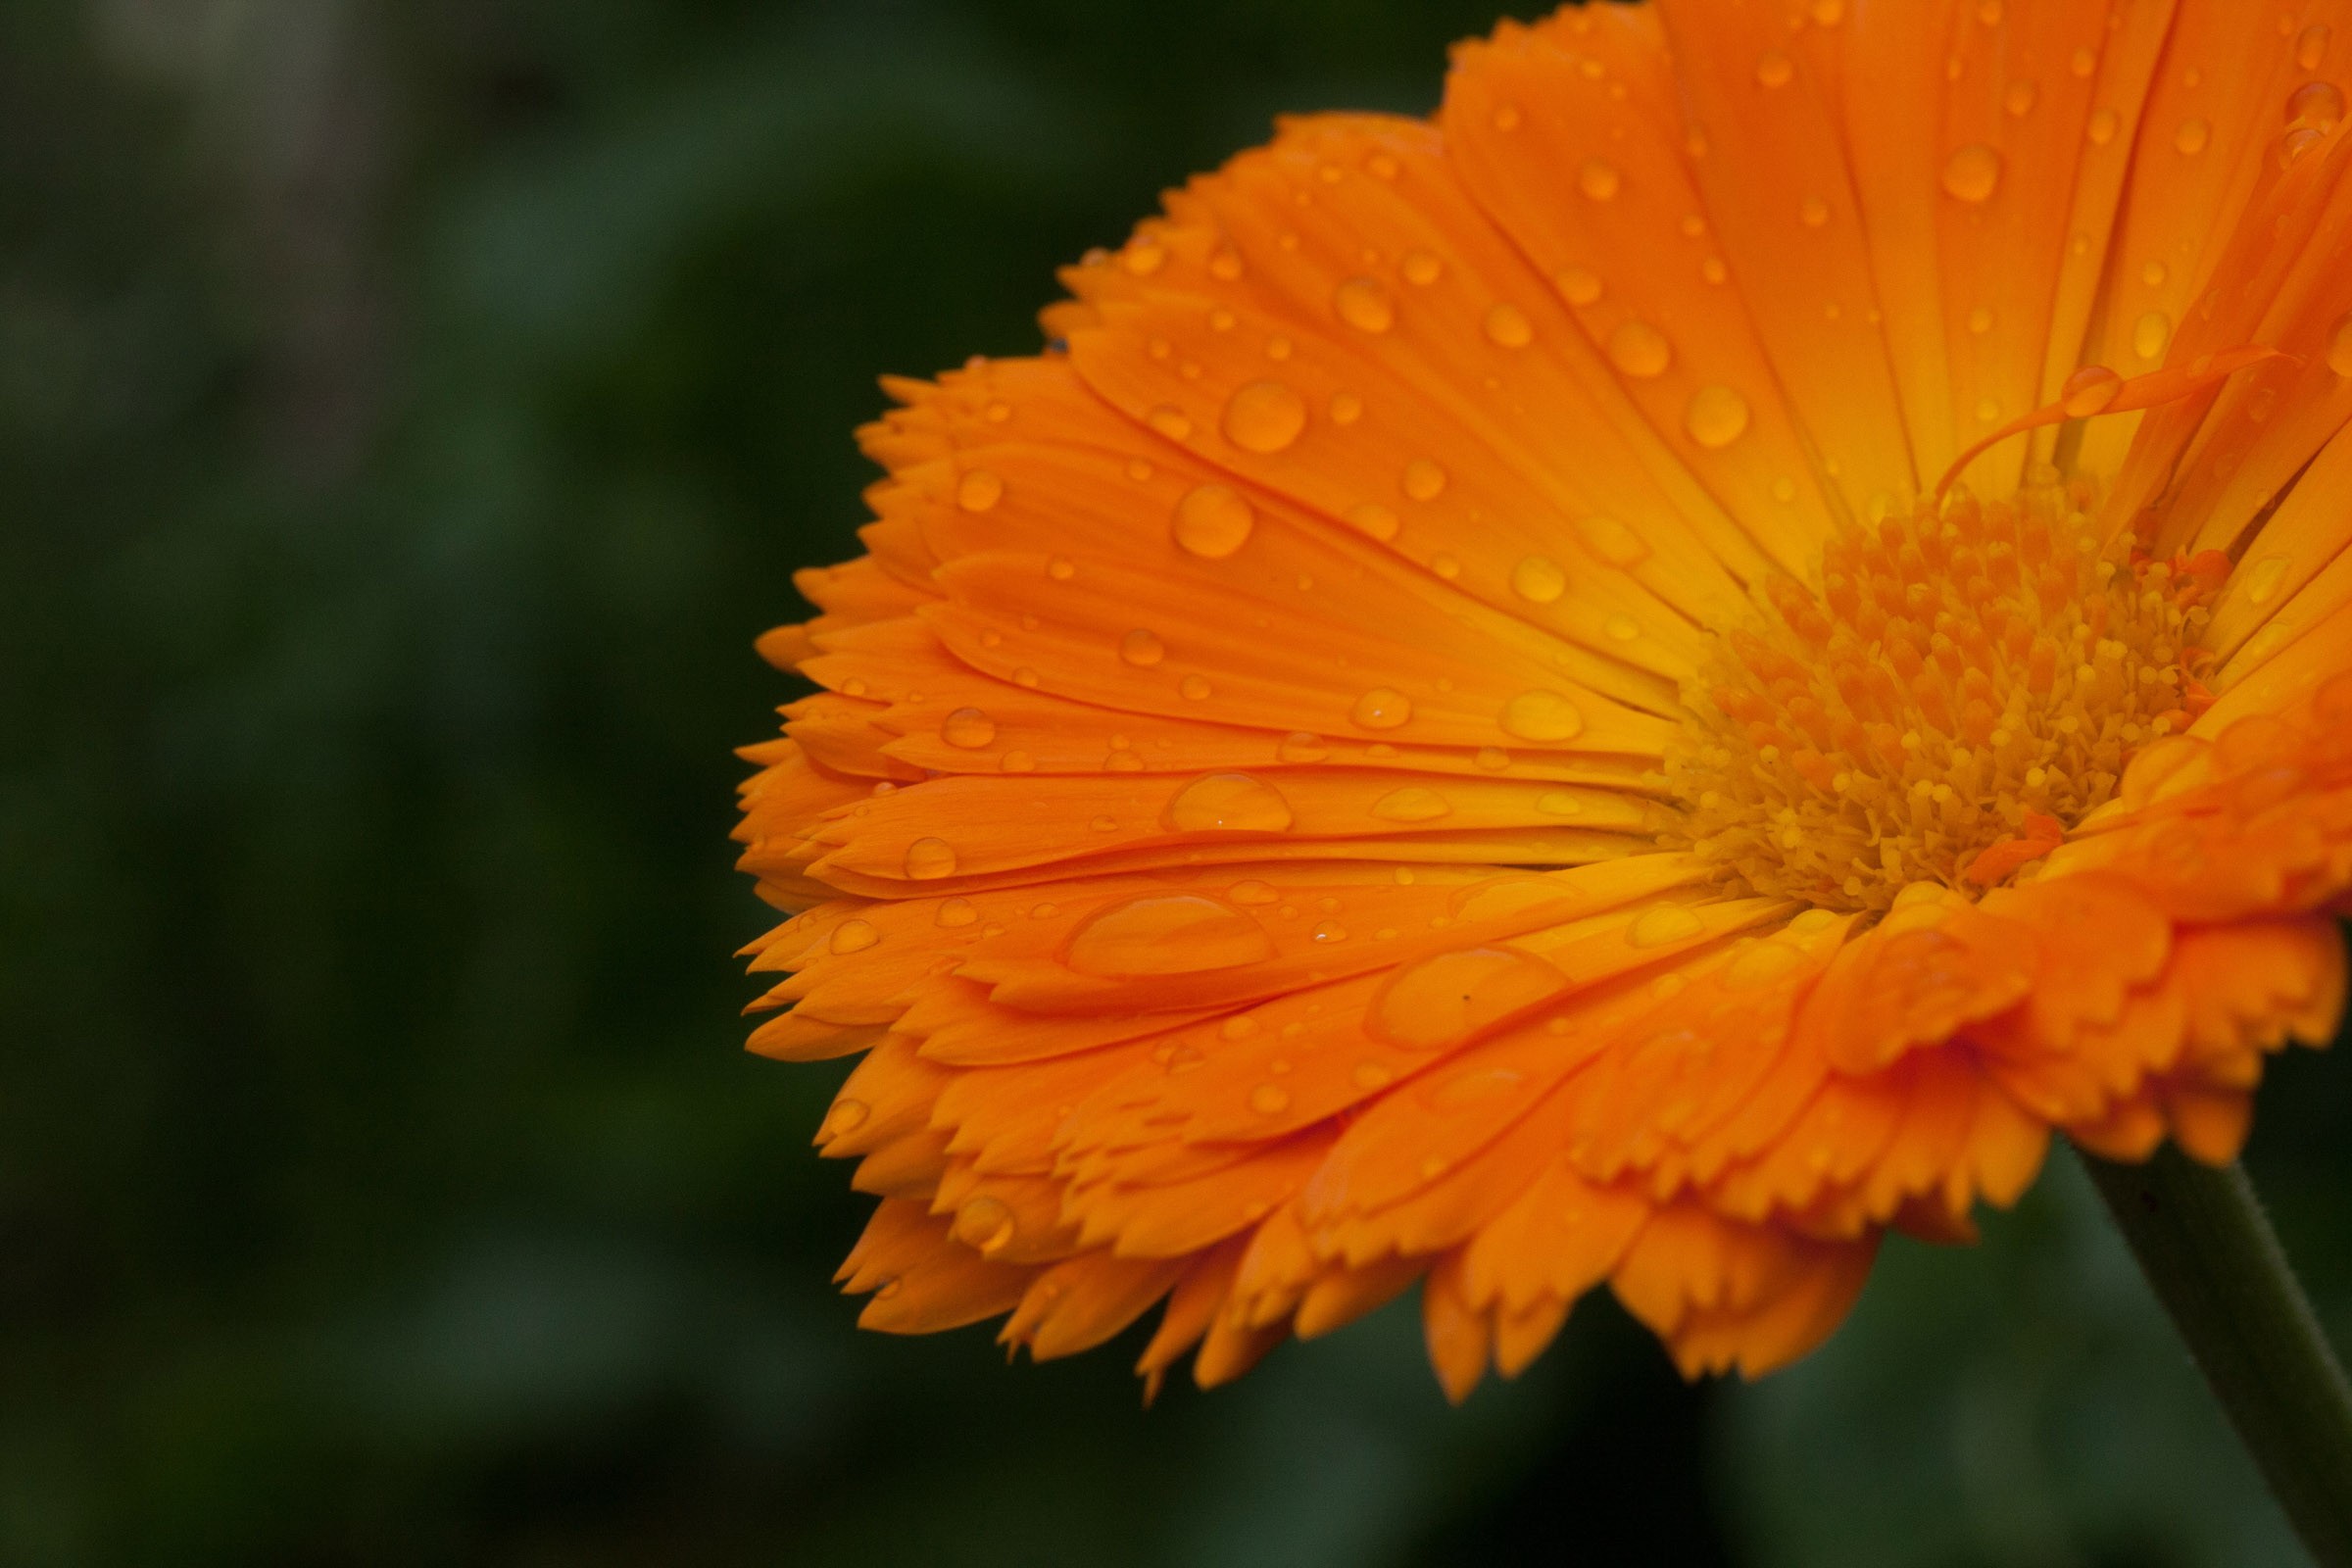 滴の落ちたオレンジ色のキンセンカ フリー写真有 イメージガレージ